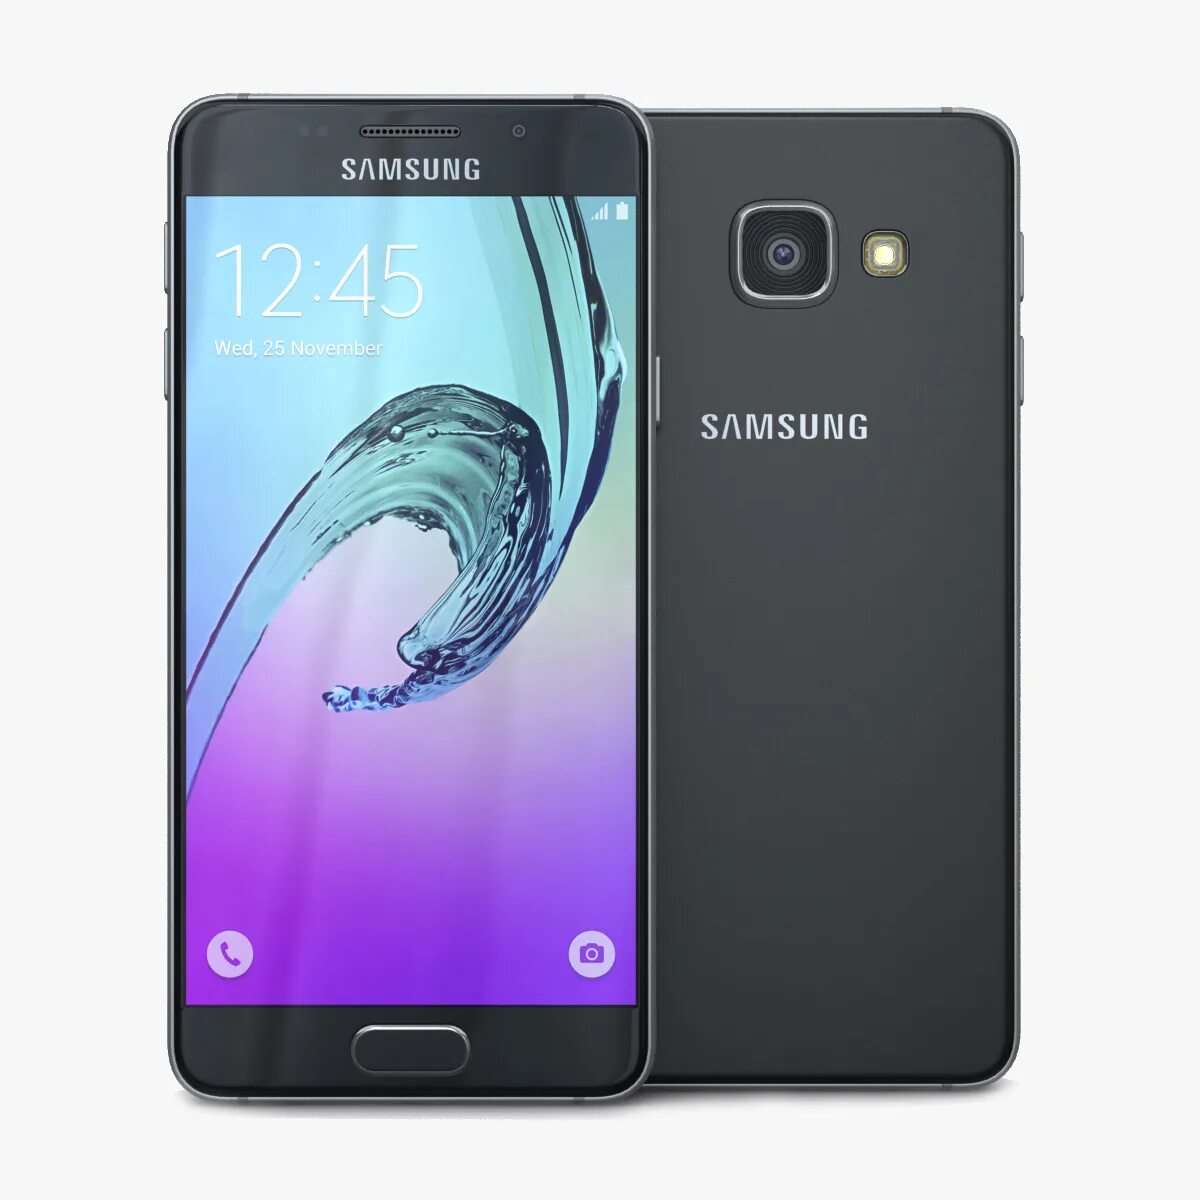 Samsung Galaxy a3 2016 Black. Samsung a7 2016. Самсунг Galaxy a7 2016. Samsung a7 2016 Black.